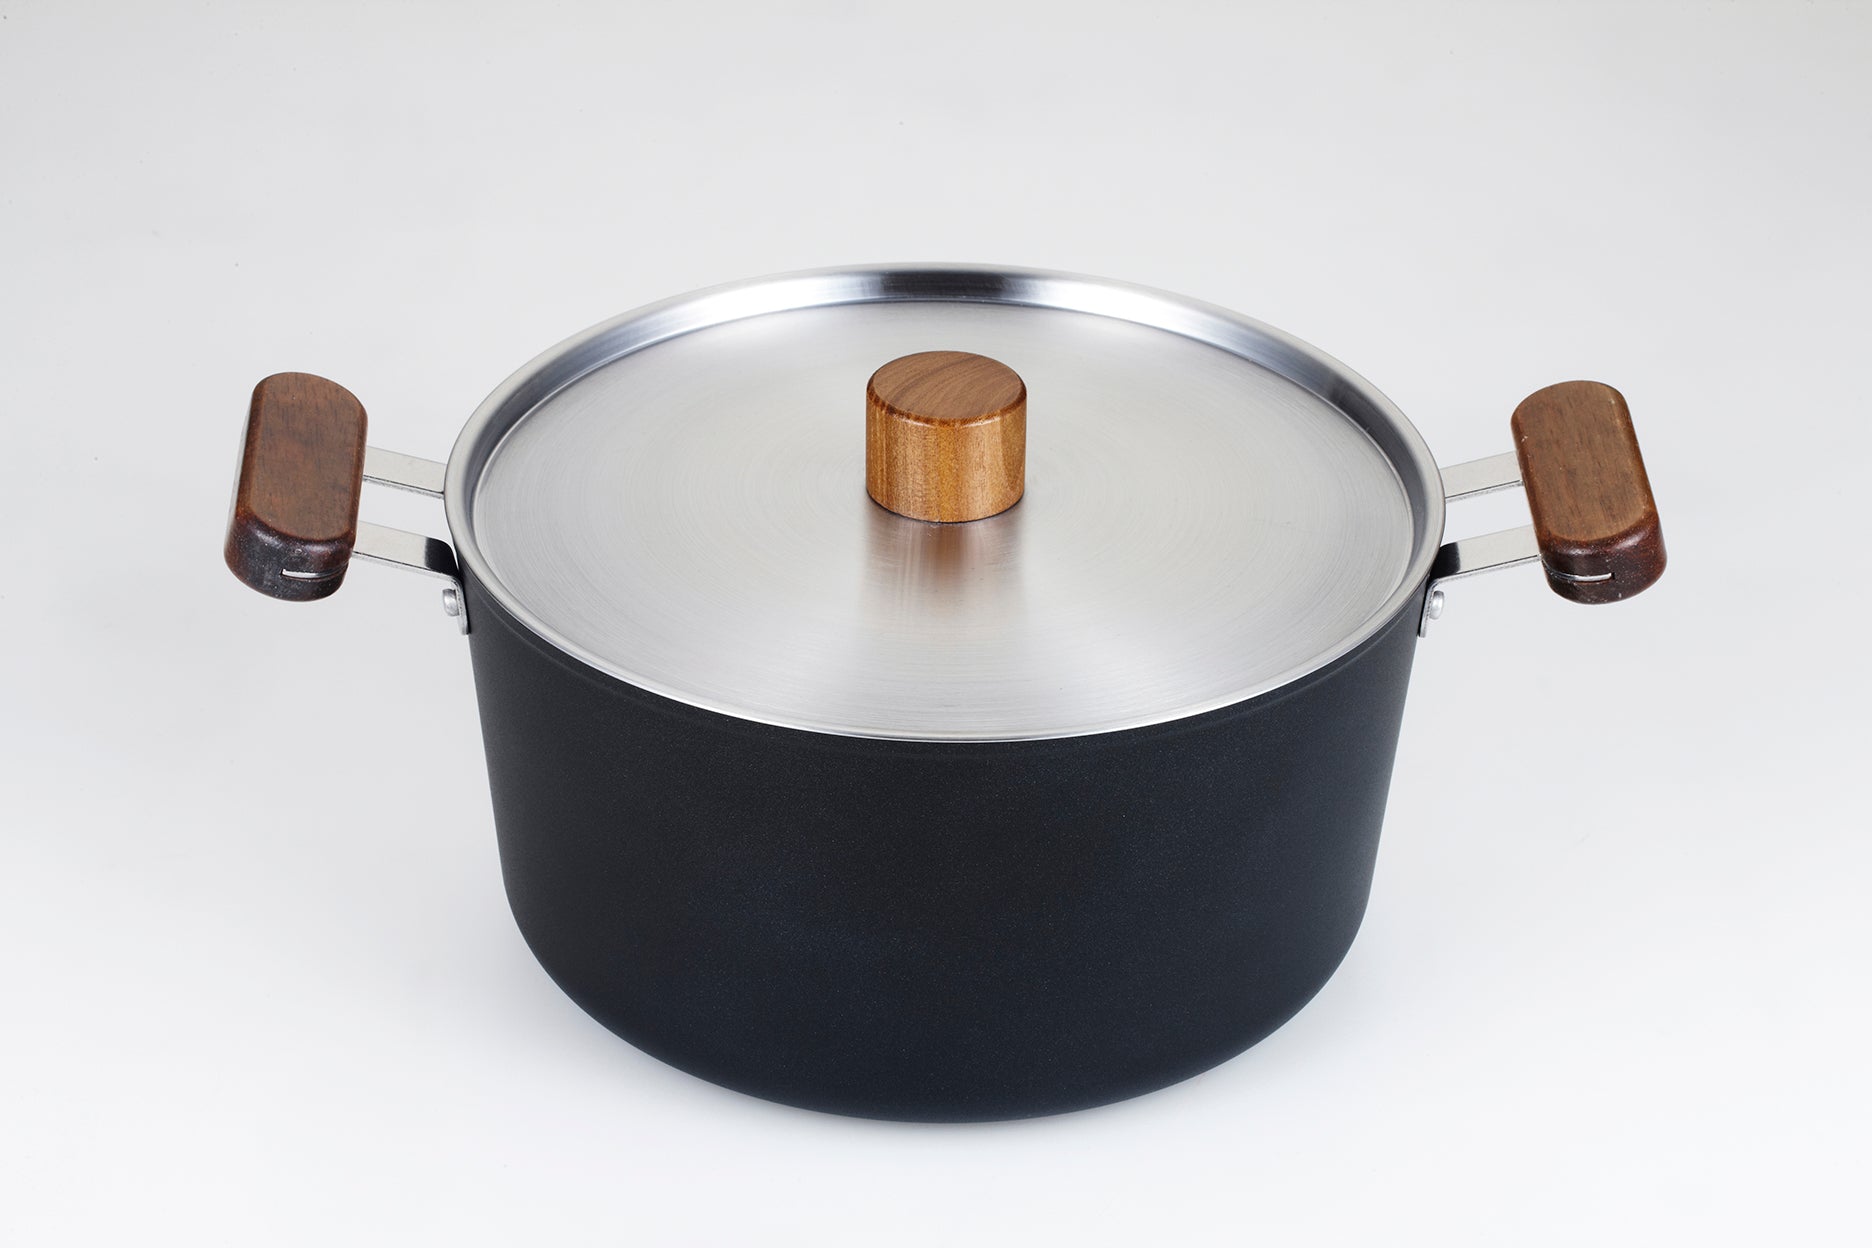 韓國製 Ecoramics OSLO 一體成型鋁版不黏湯鍋24 cm (附蓋)